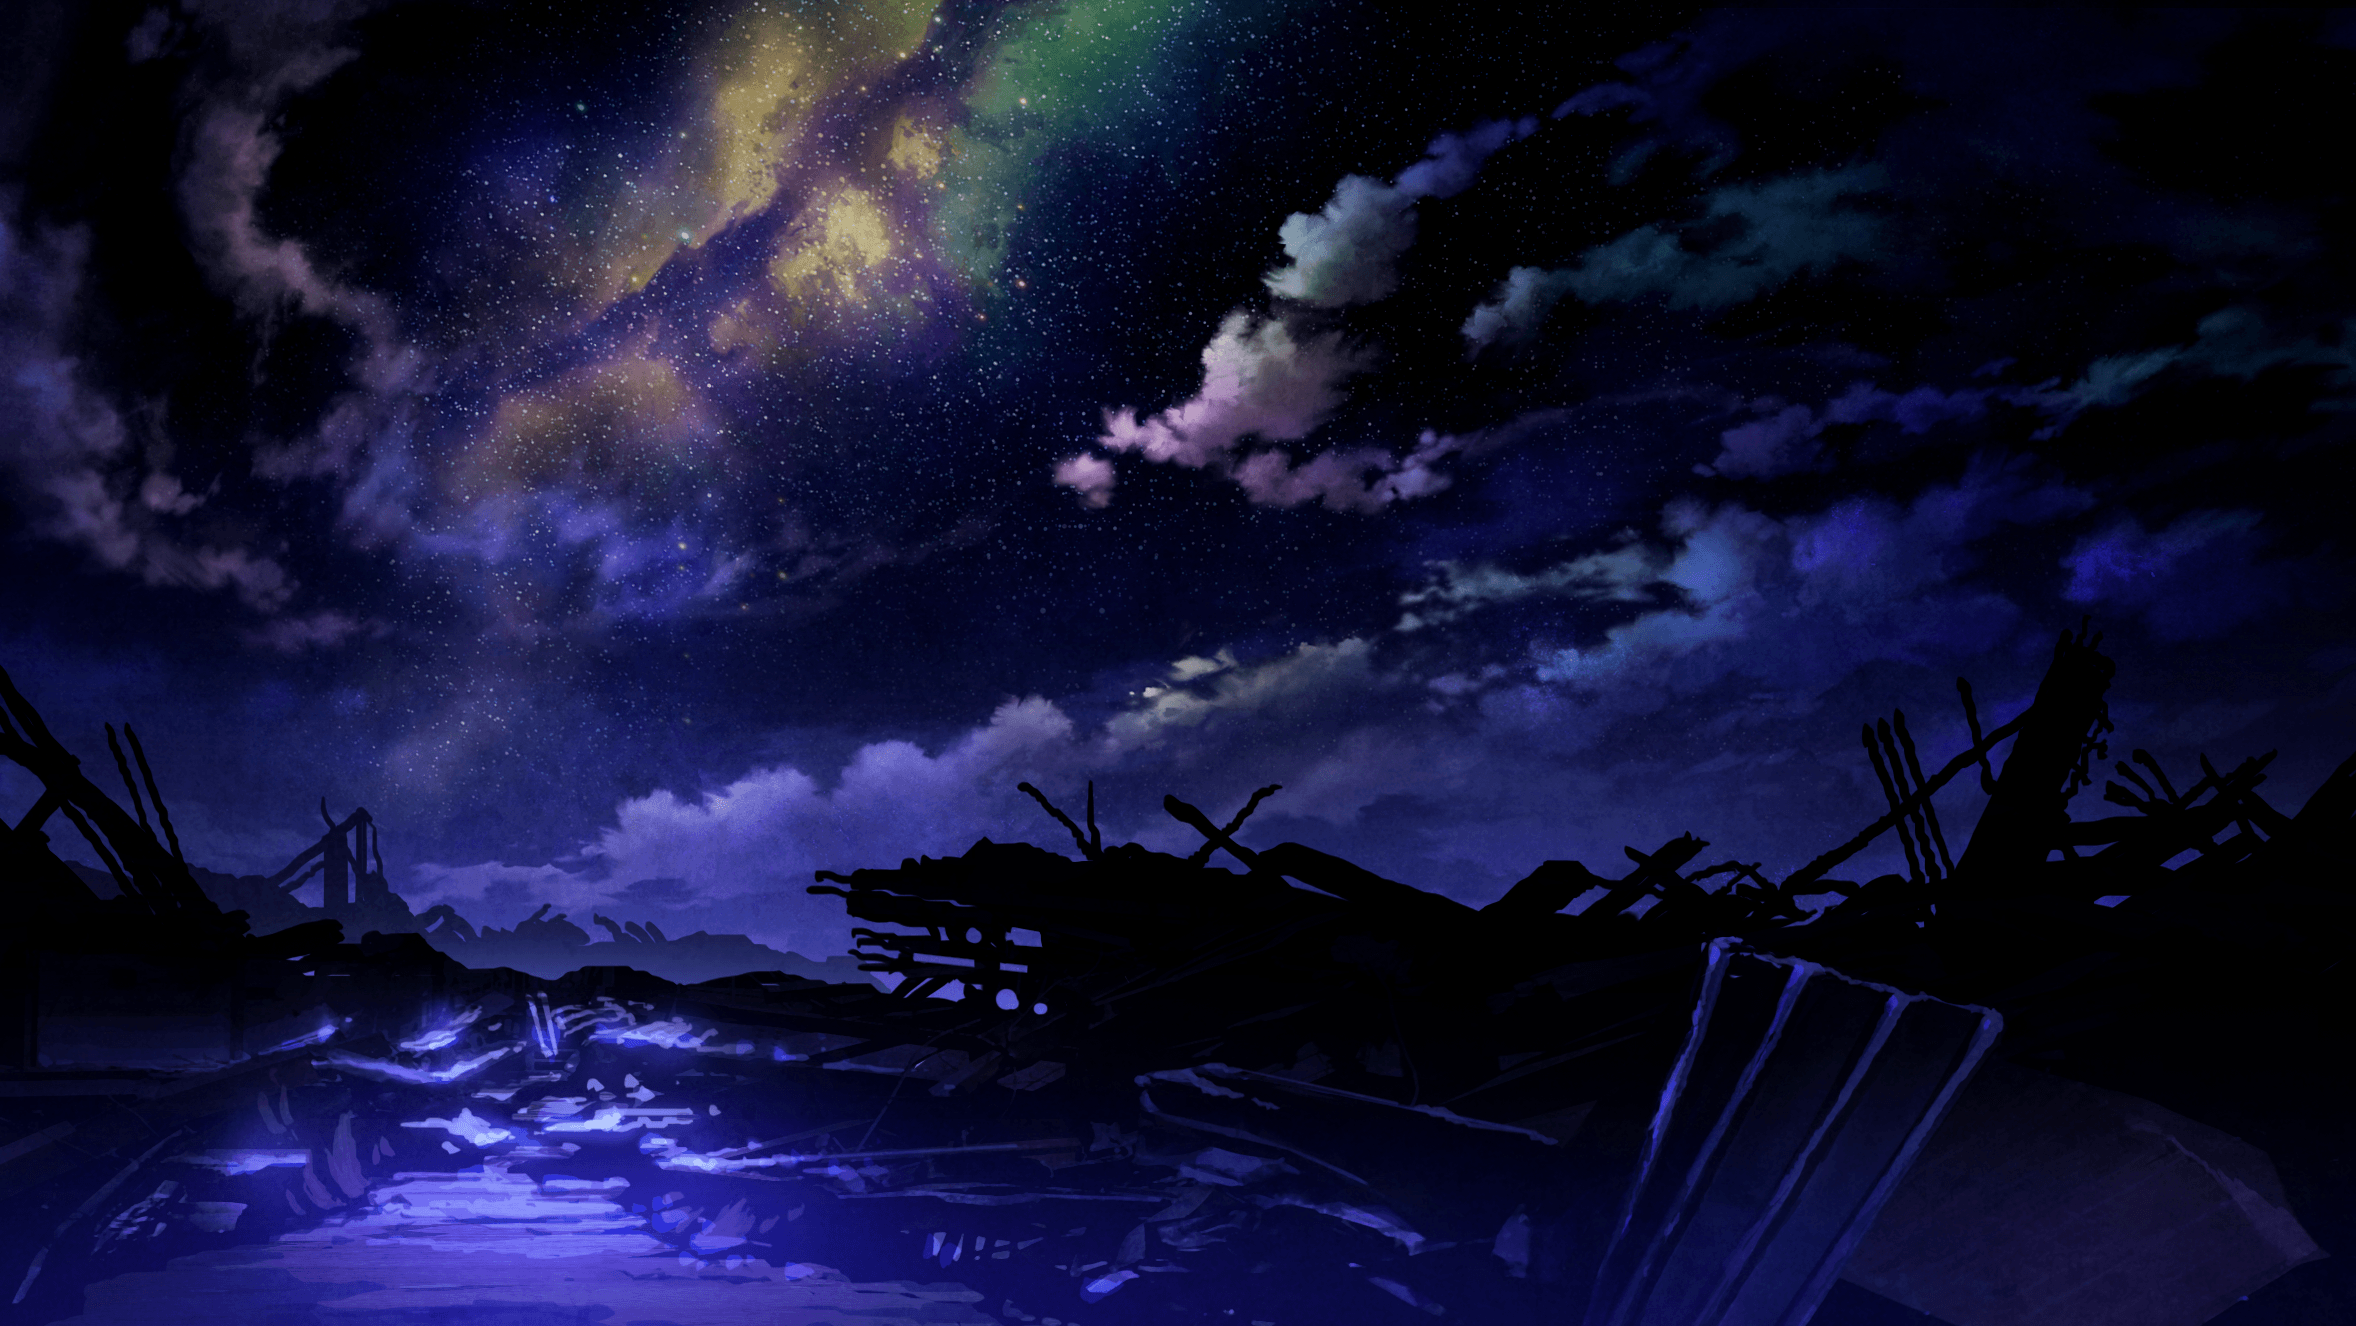 Anime Nighttime Scene Full Moon Background